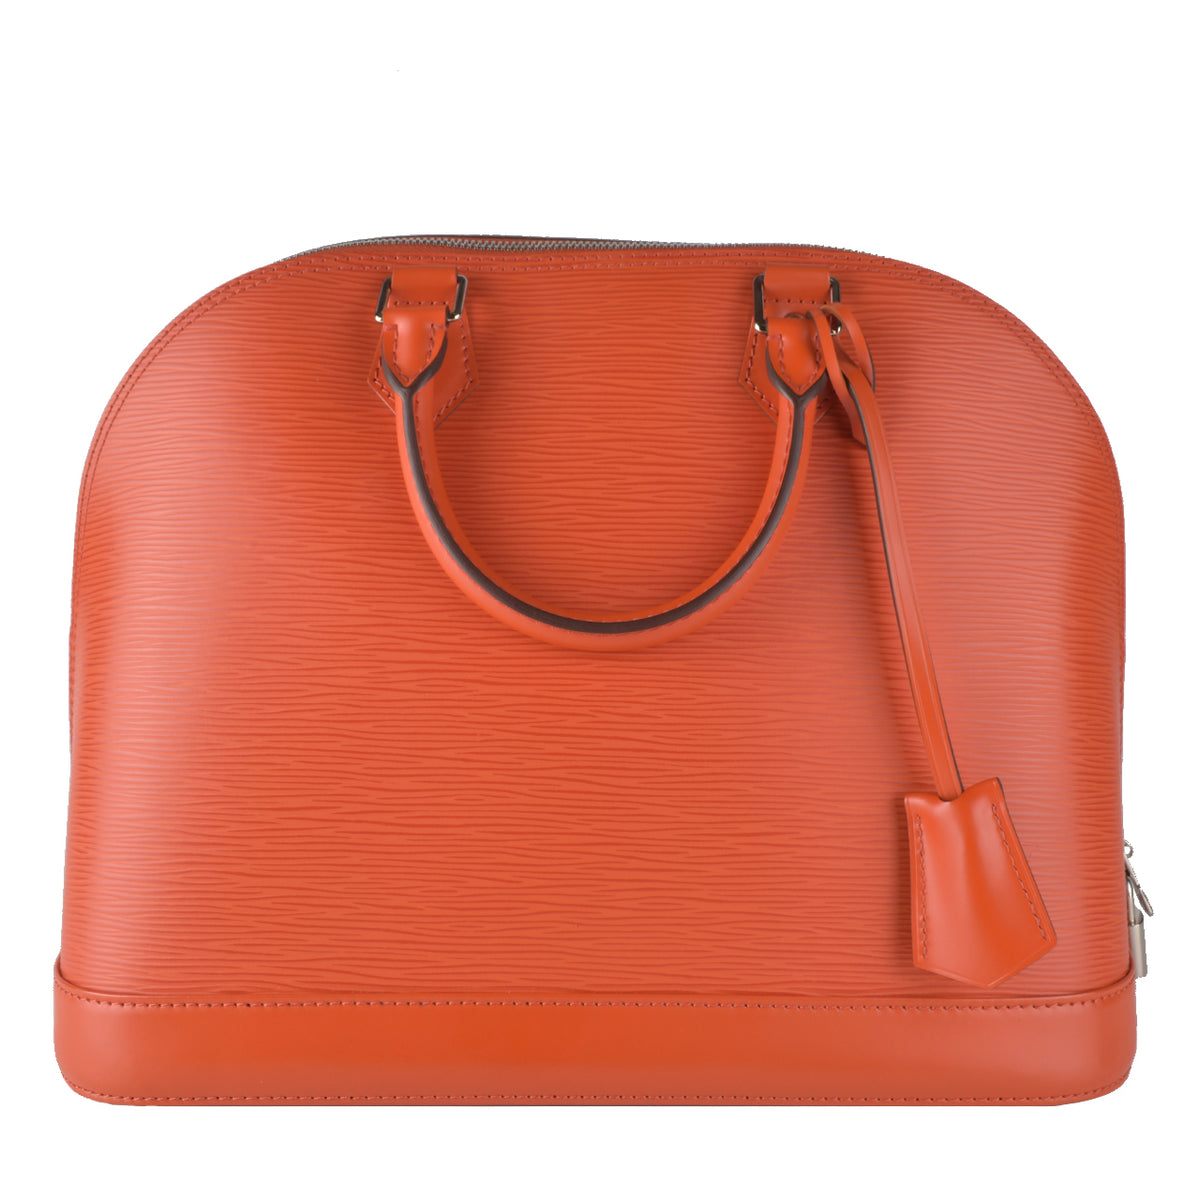 Preloved Louis Vuitton Monogram Canvas Nouvelle Vague Handbag FO0122 051123 Off